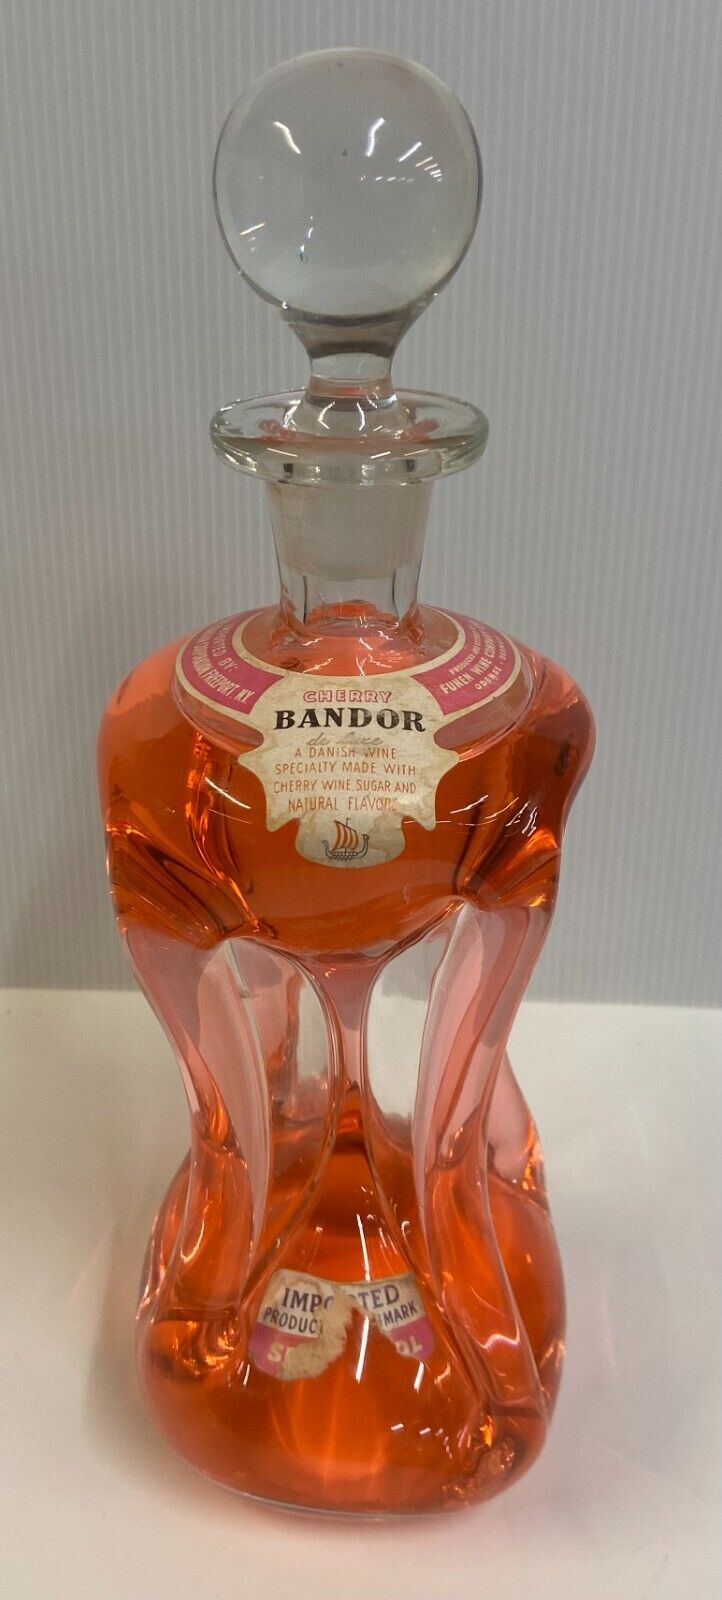 Vintage Bandor Denmark Kluk Kluk Bottle with Cherry Wine Liquor Label